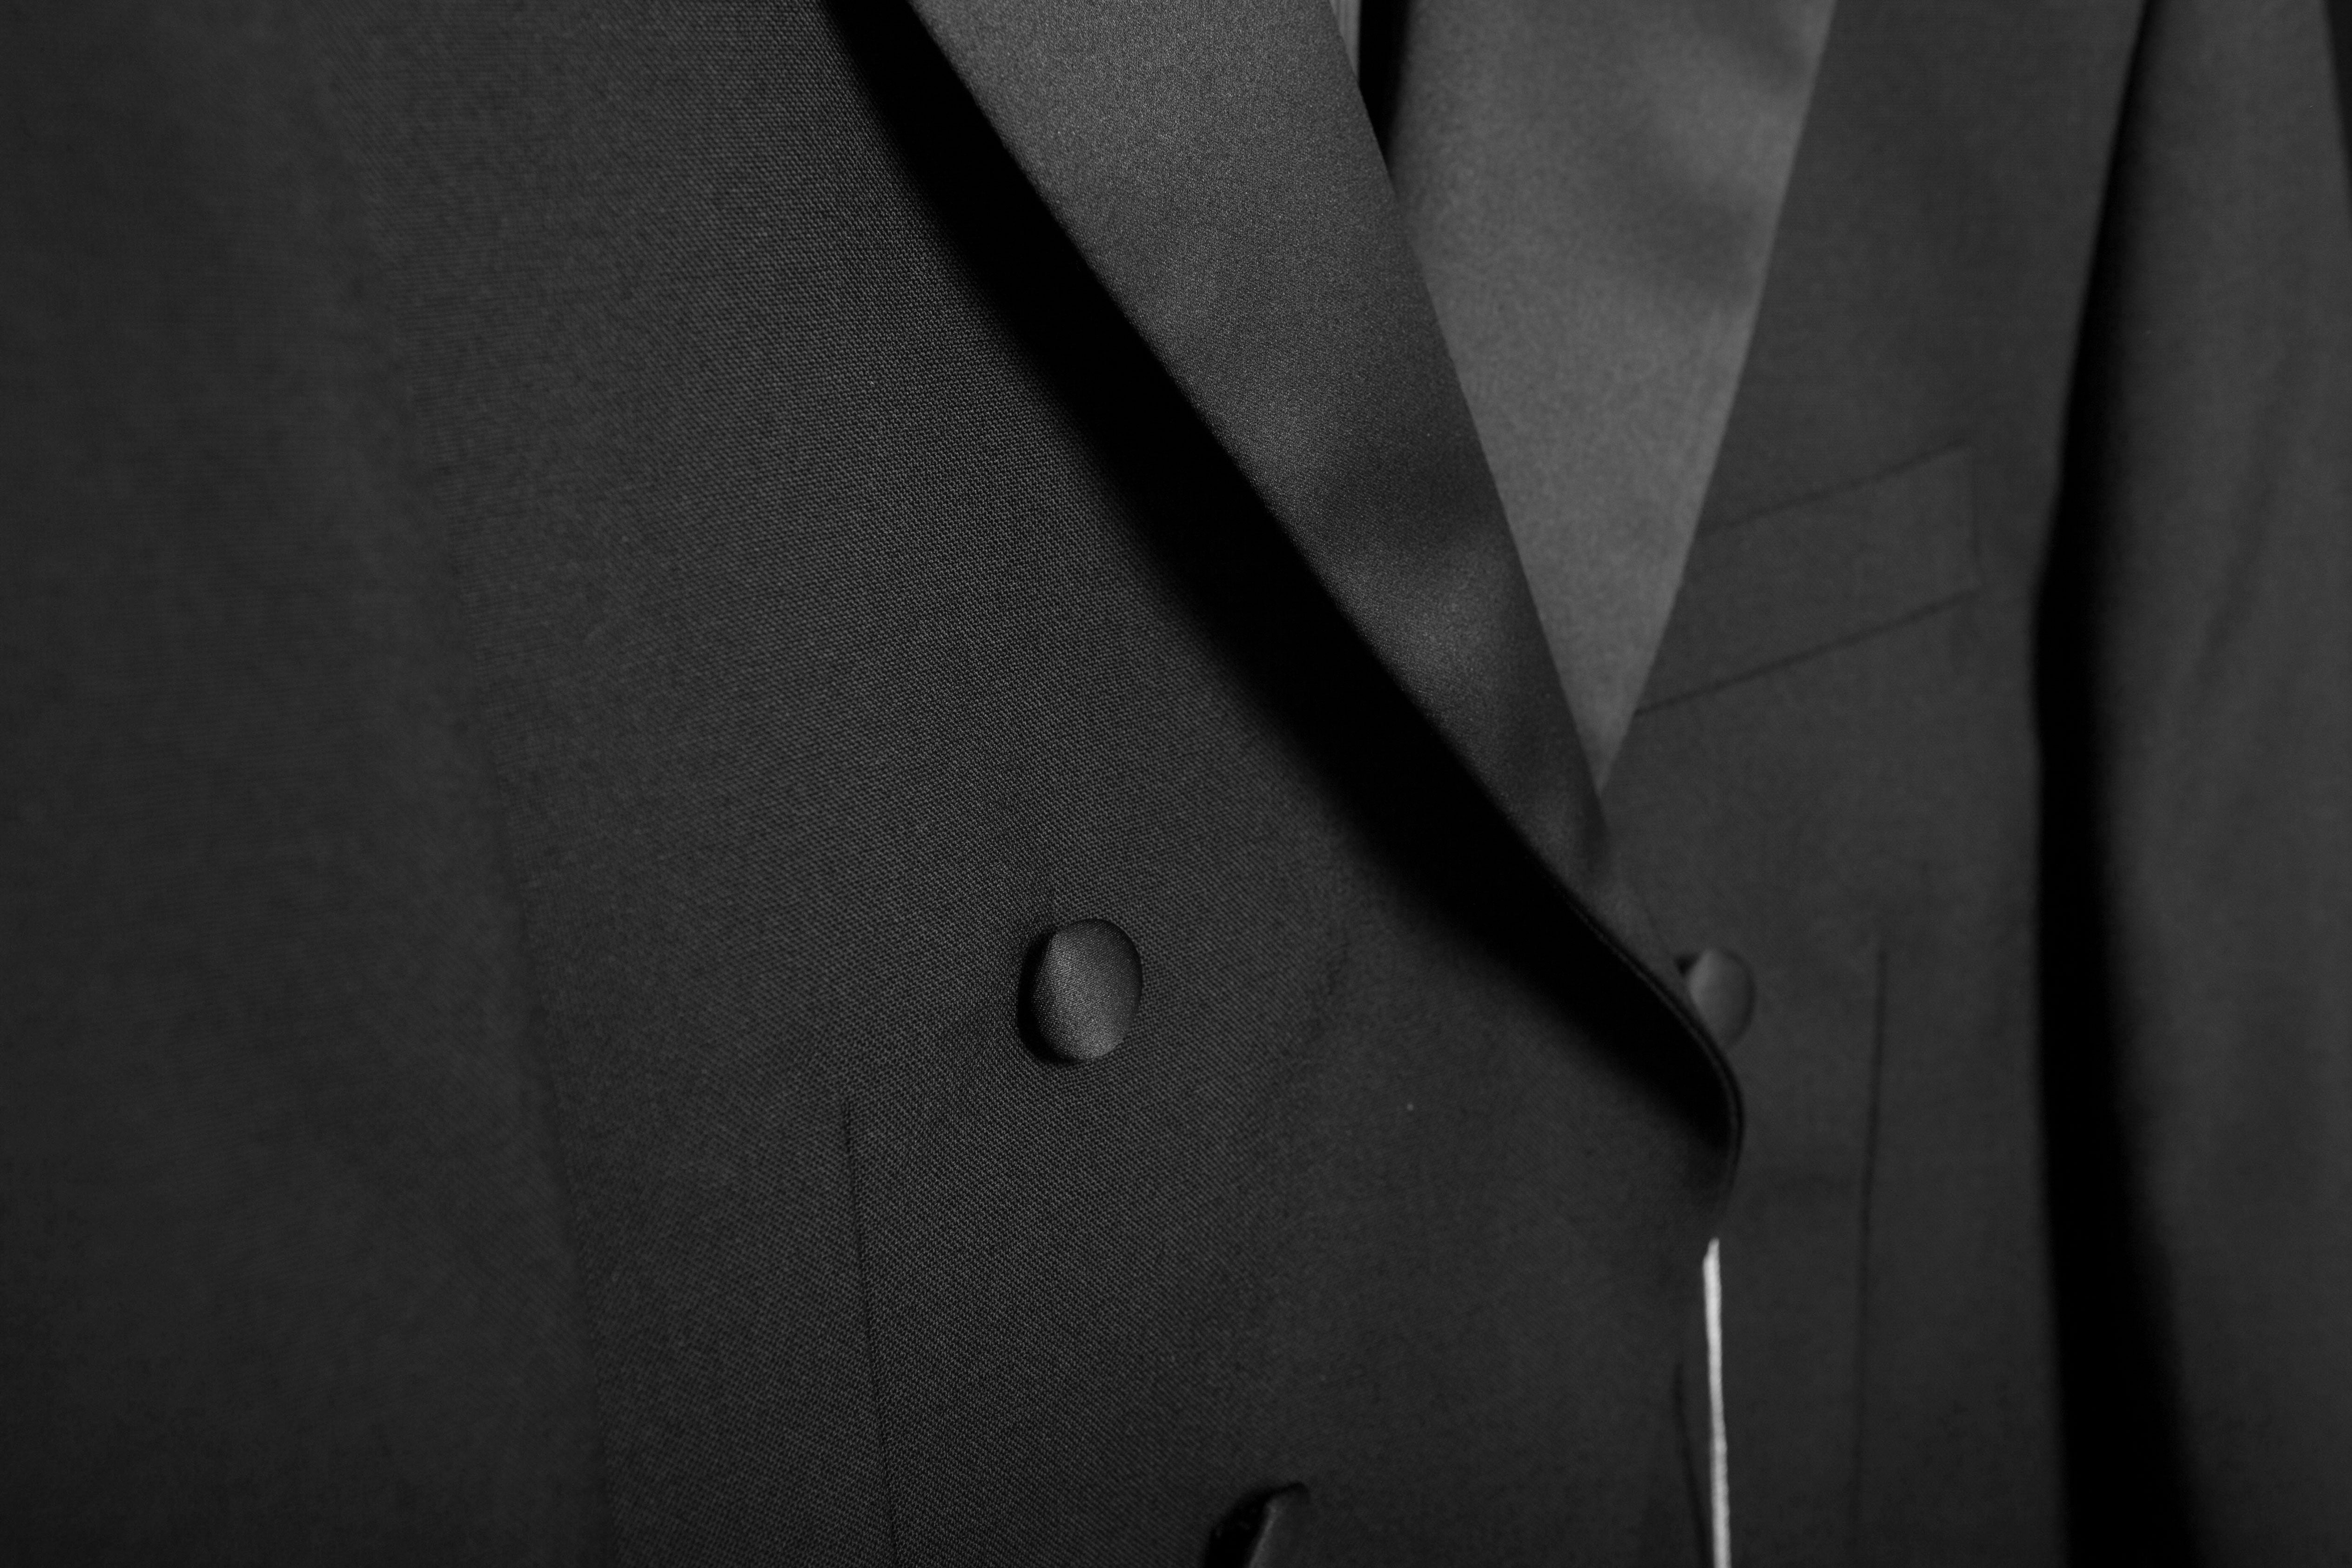 Top 10 Best Men's Suit Brands in The World - YouTube